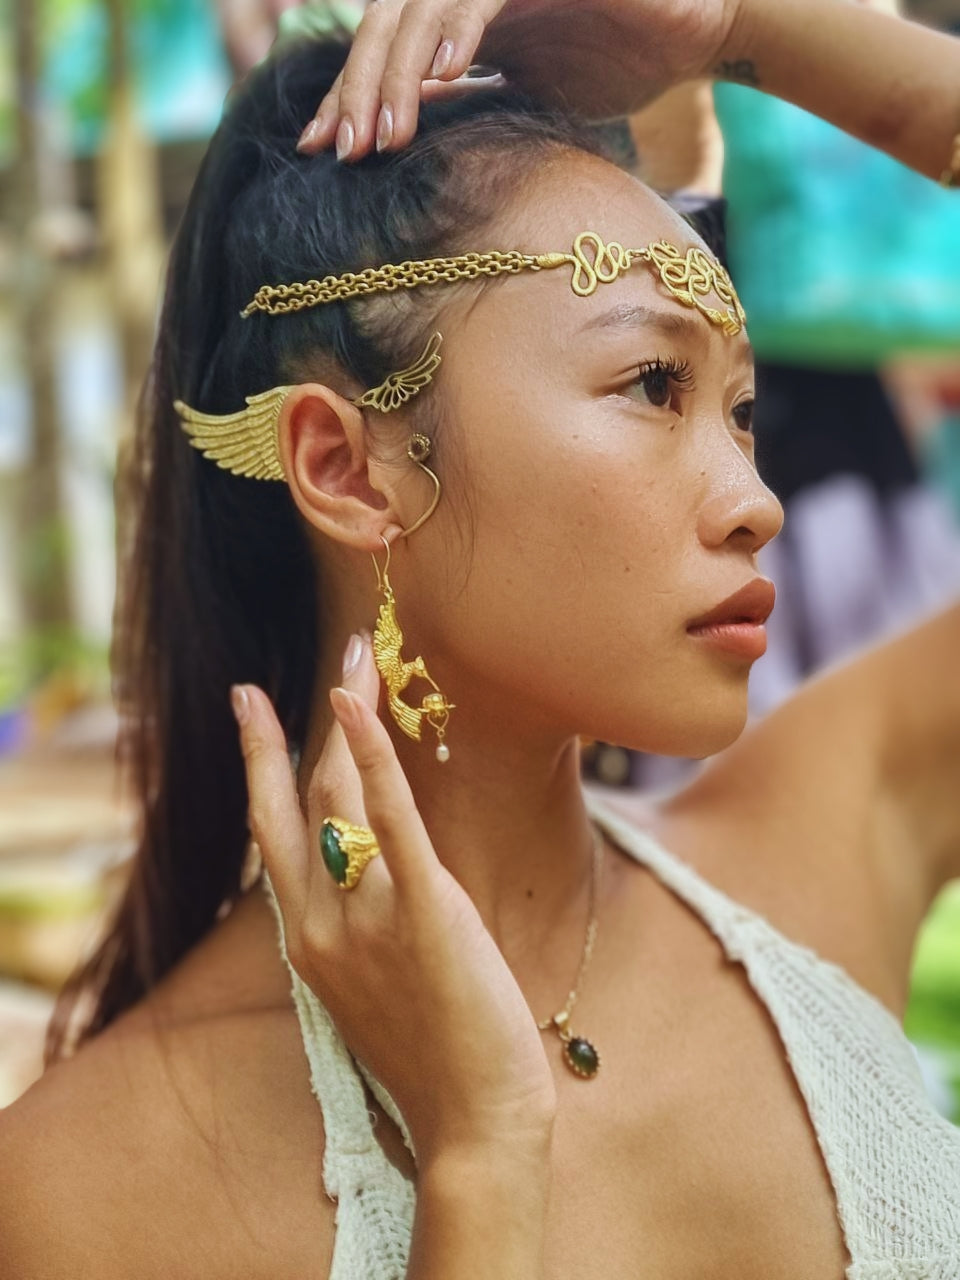 Nagapooshani headpiece necklace